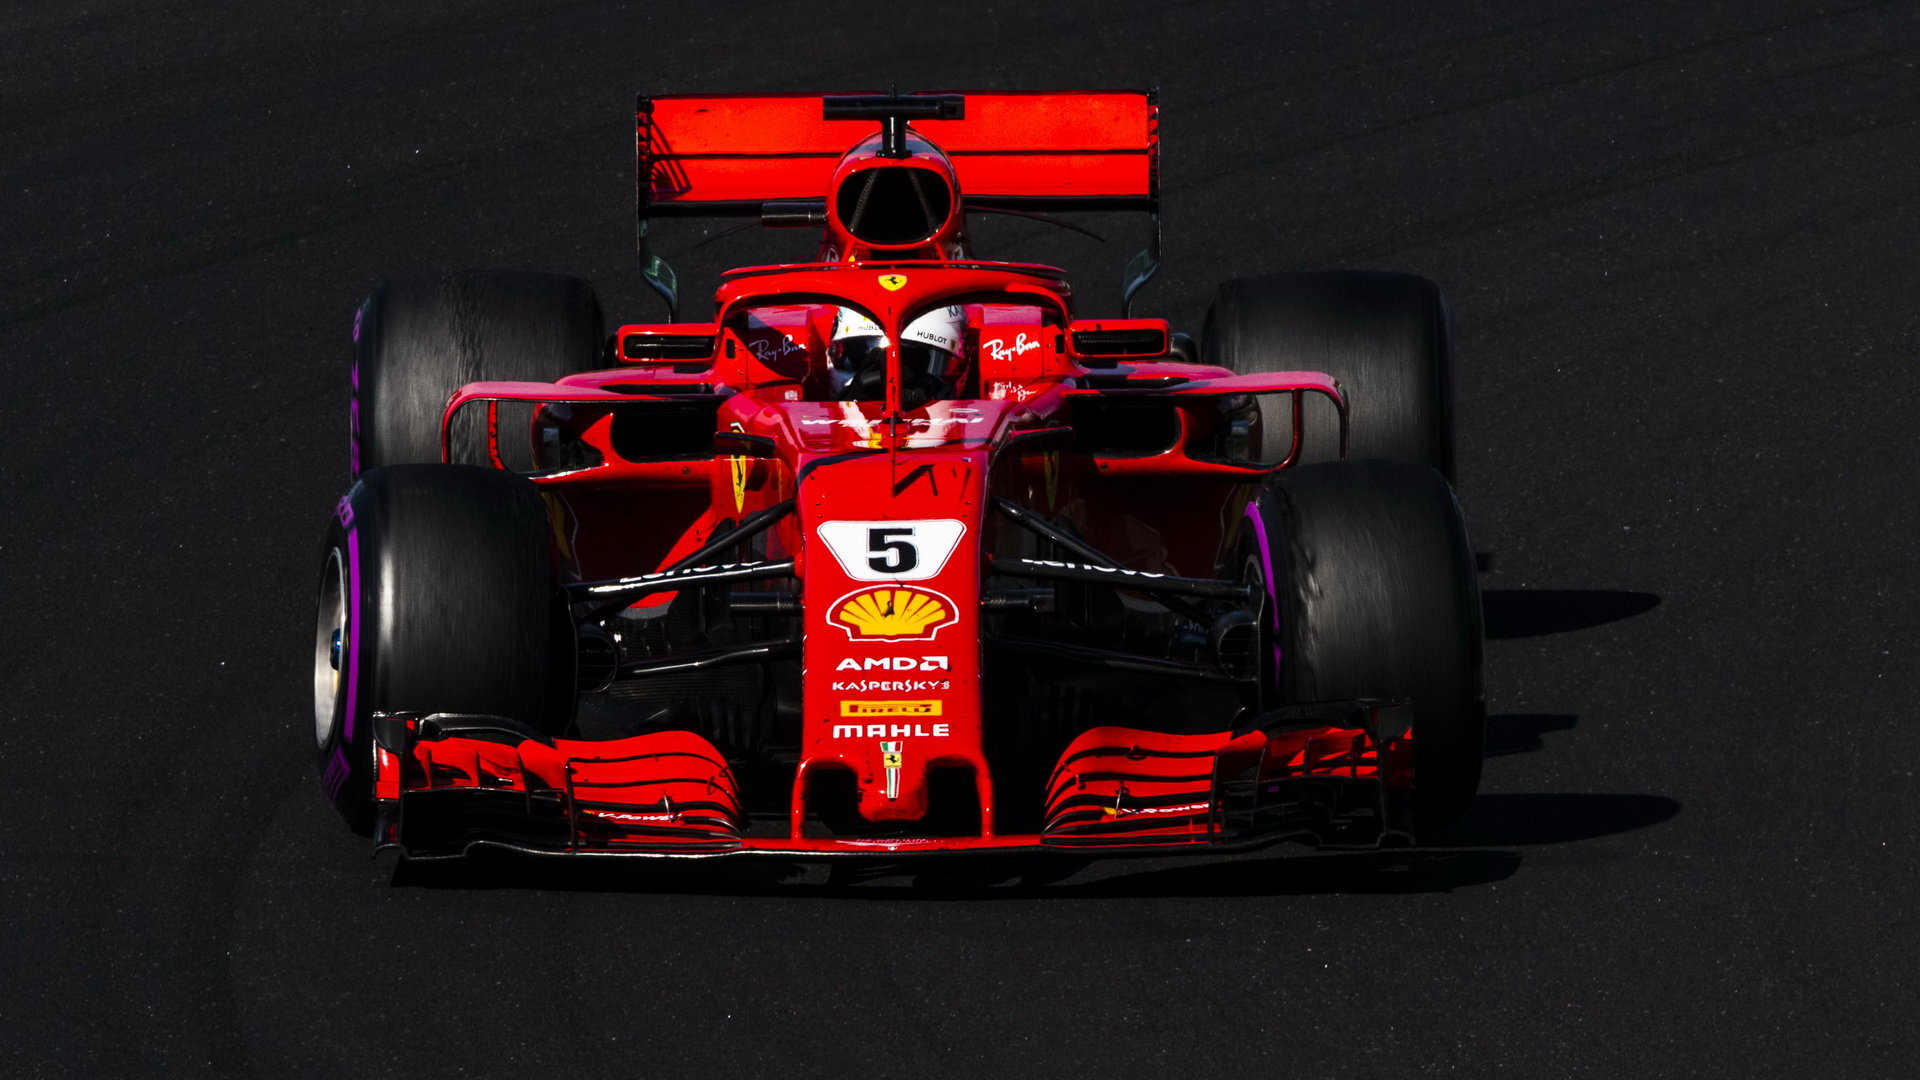 Bude mít Ferrari i po změne technického šéfa v nadcházející sezóně rychlý vůz schopný bojovat o nejvyšší příčky?